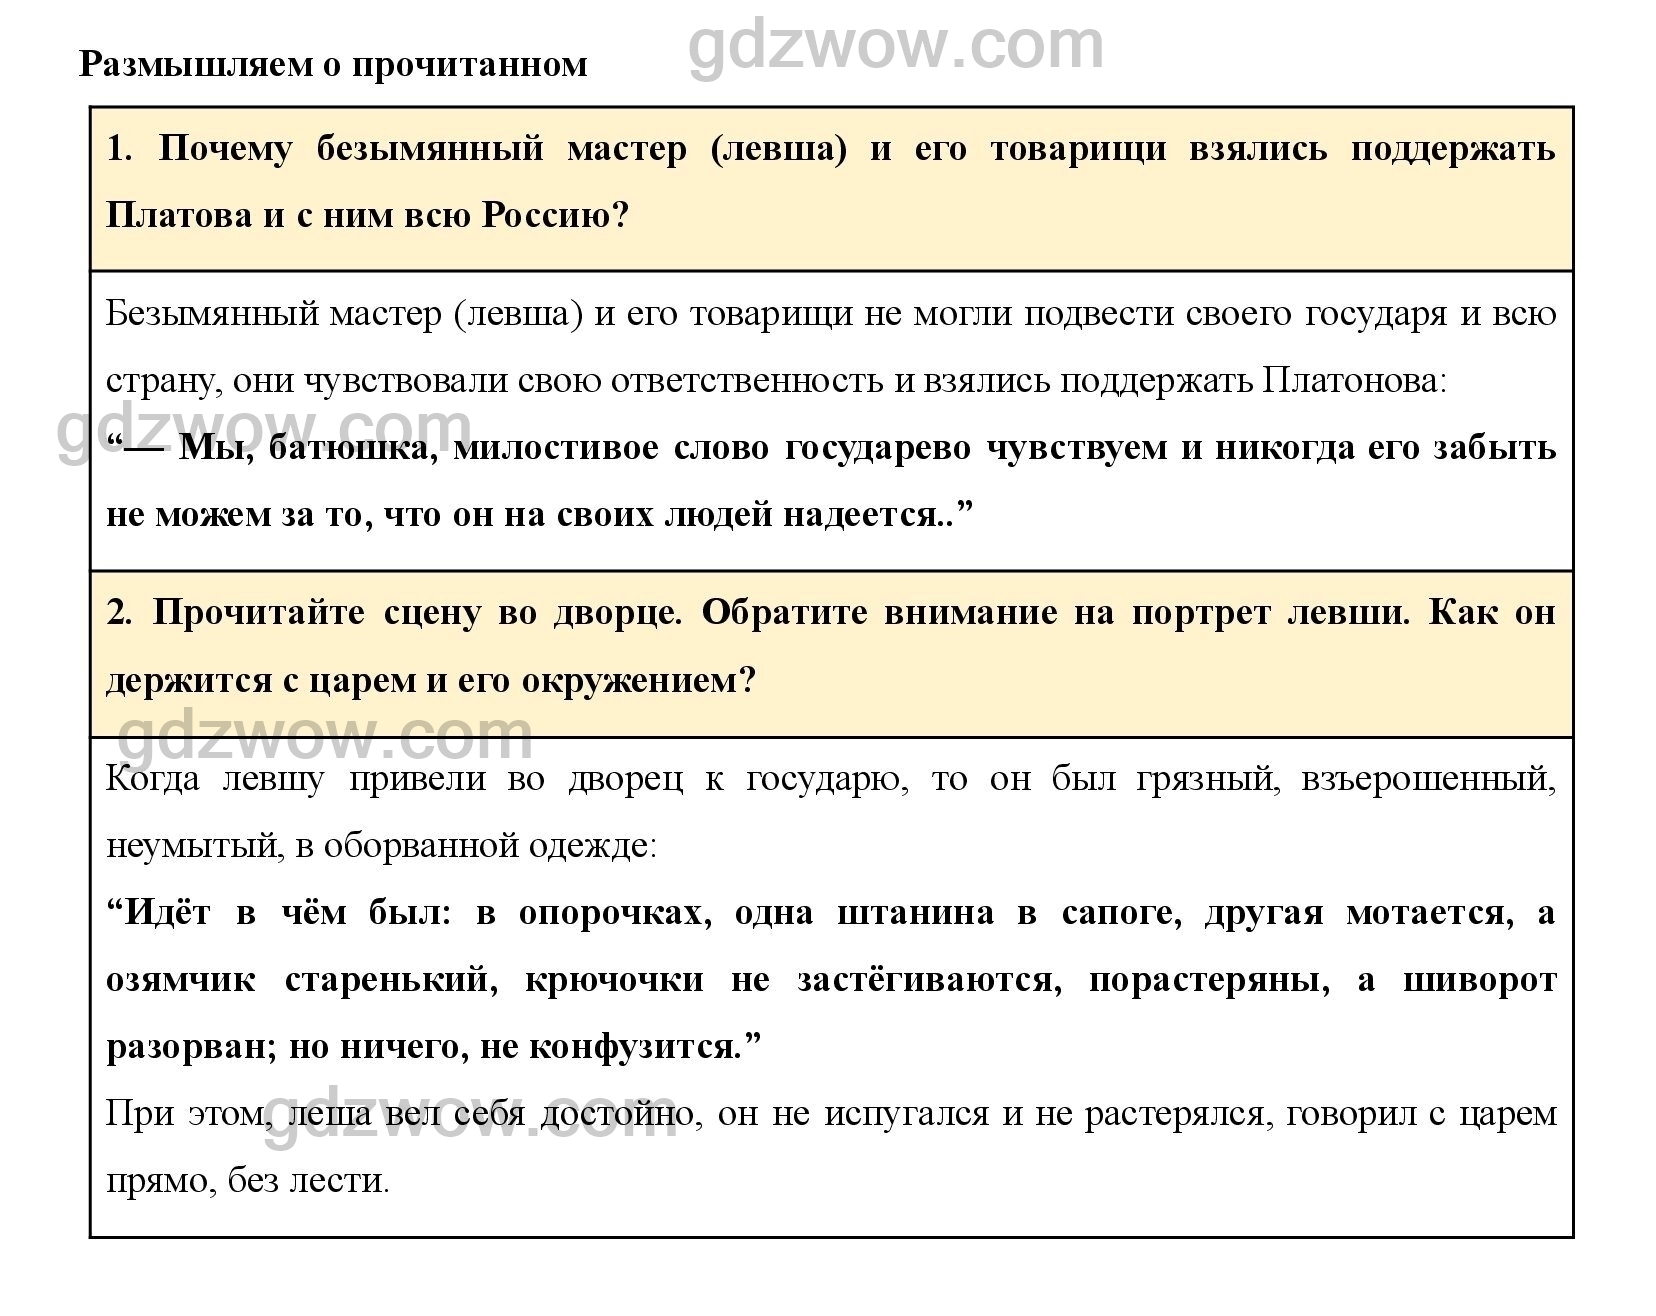 План биографии солженицына по учебнику 9 класс коровина 2 часть